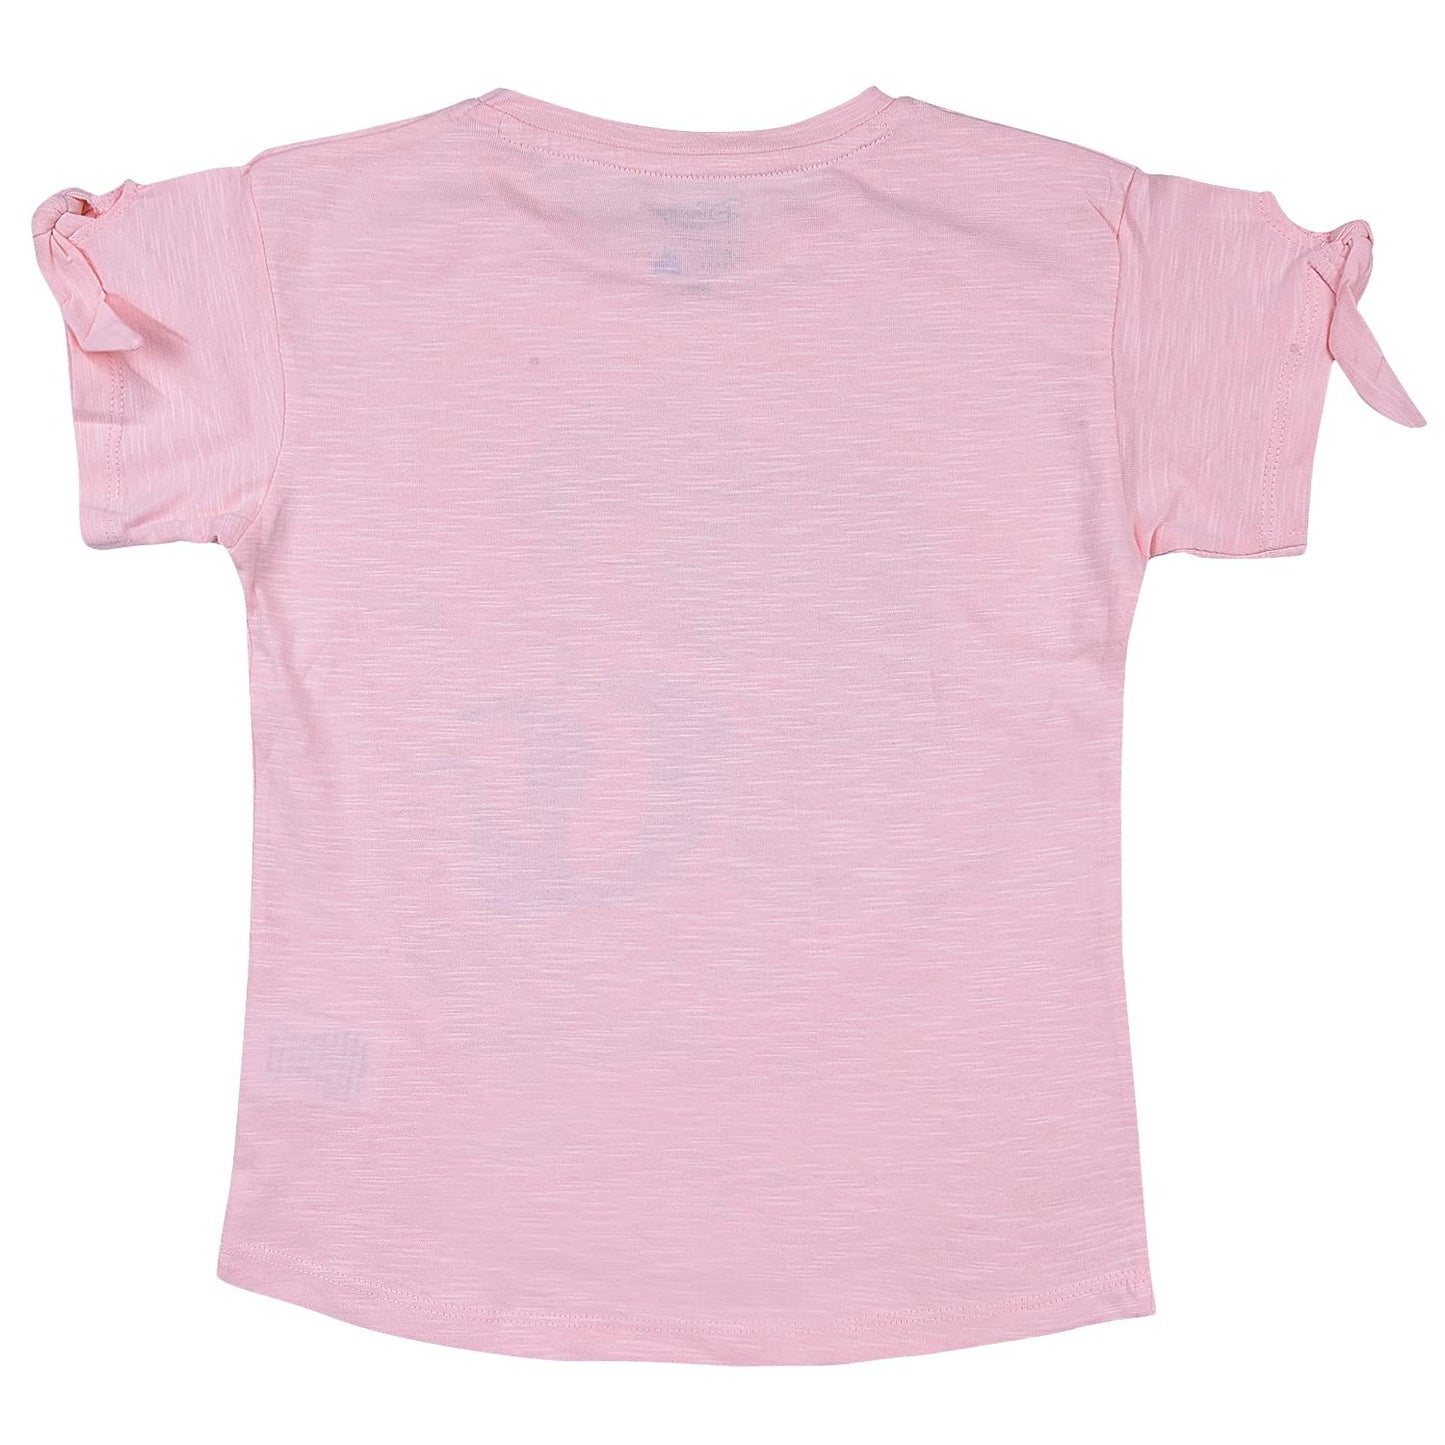 Wish Karo Baby Girls Printed T-Shirt for Girls-tsg208